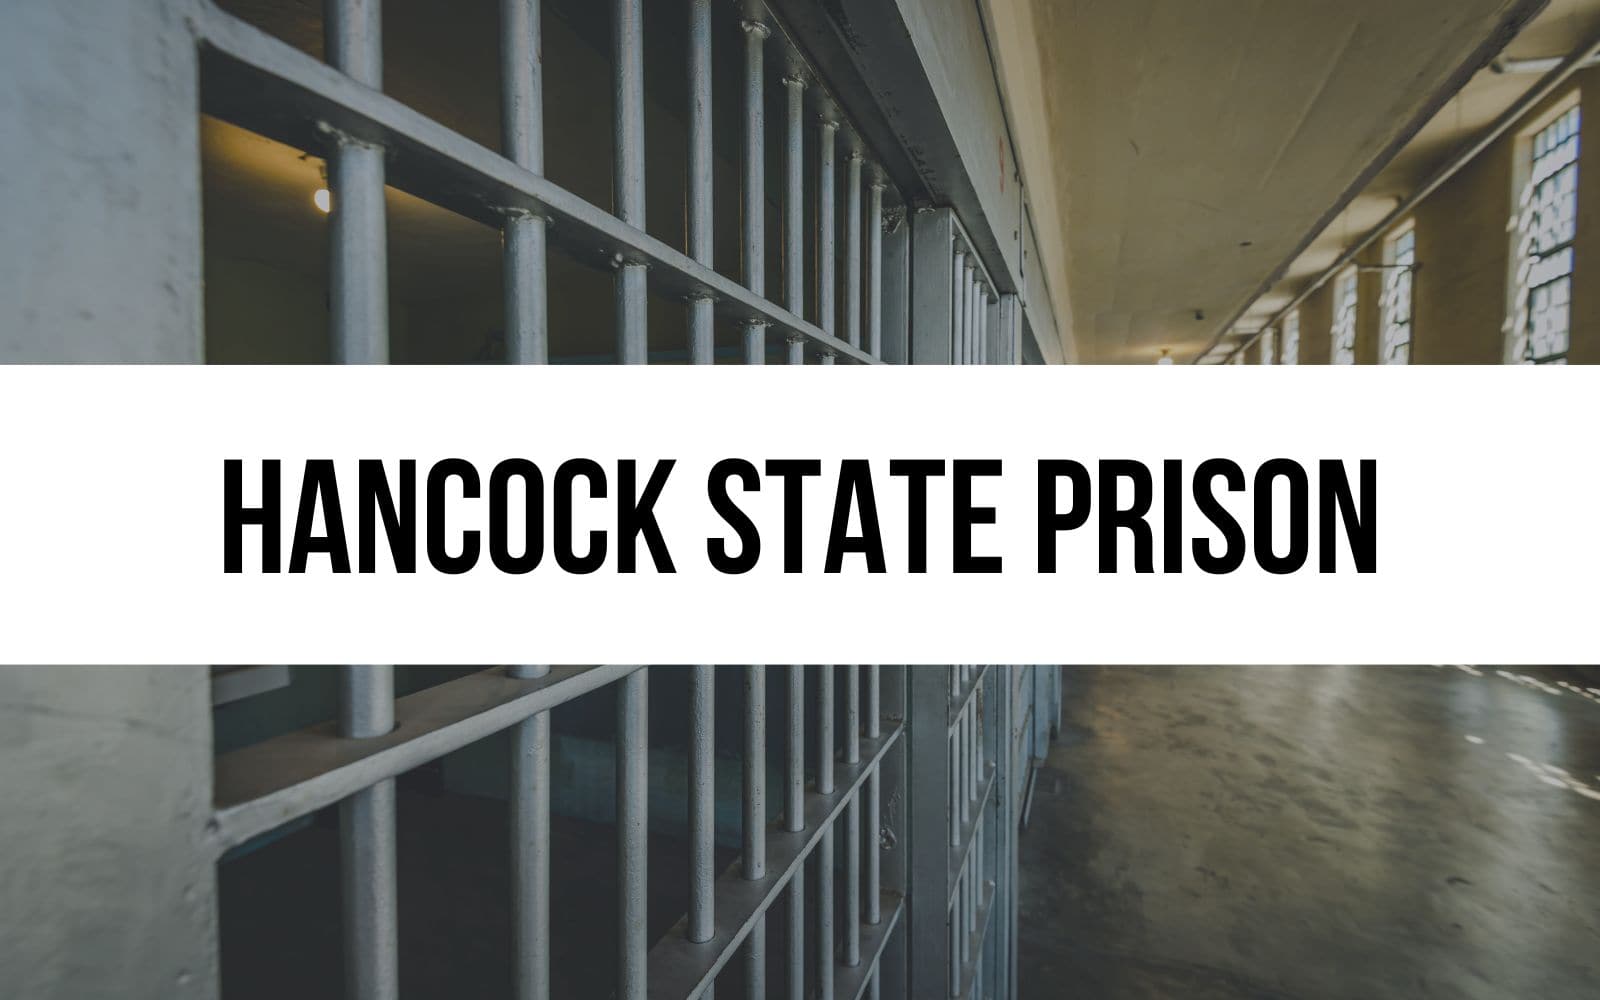 Hancock State Prison